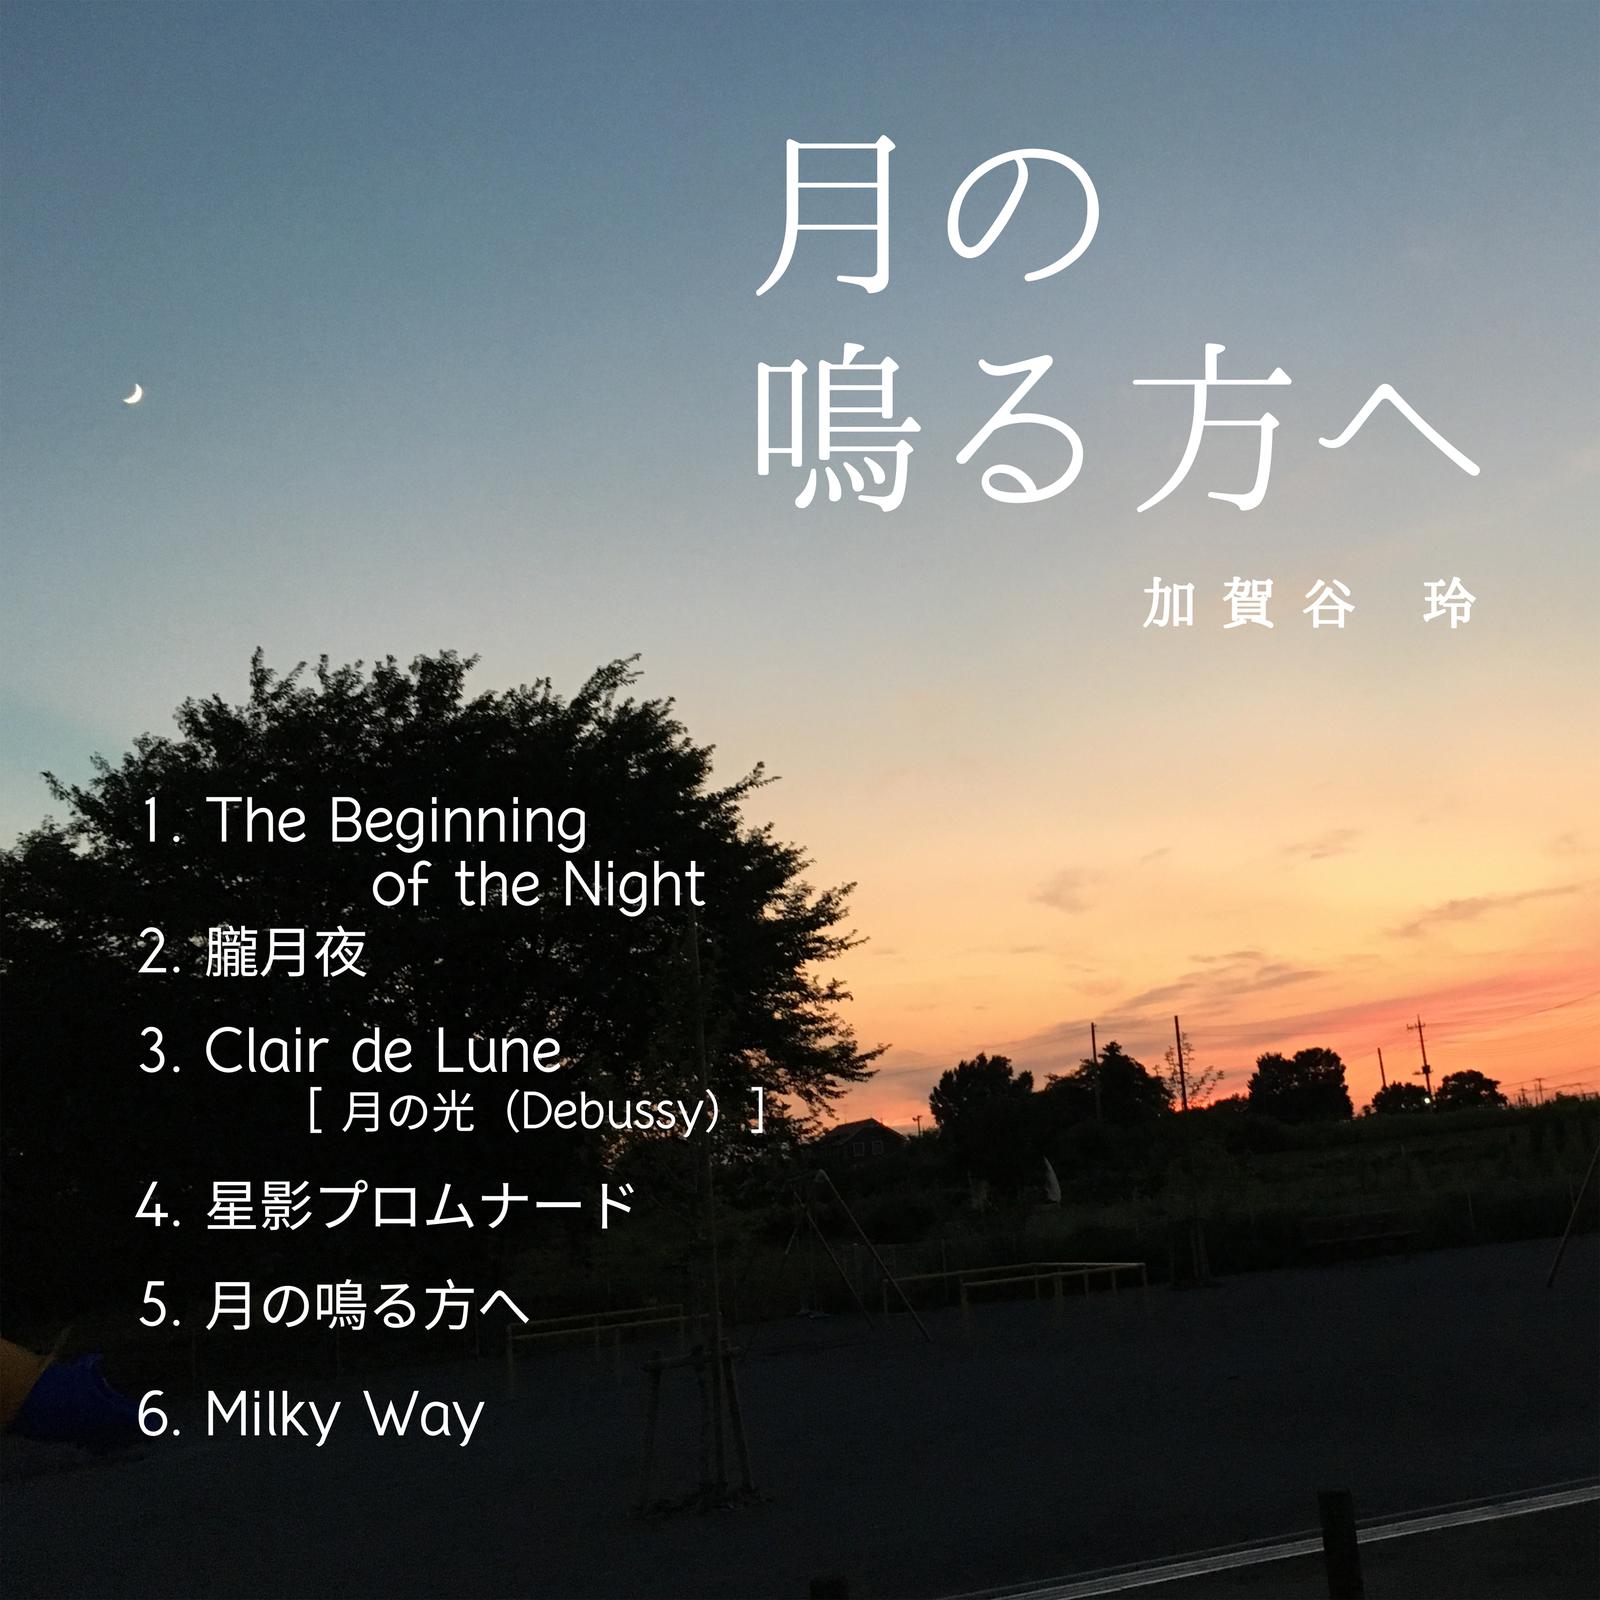 加賀谷玲 - The Beginning of the Night